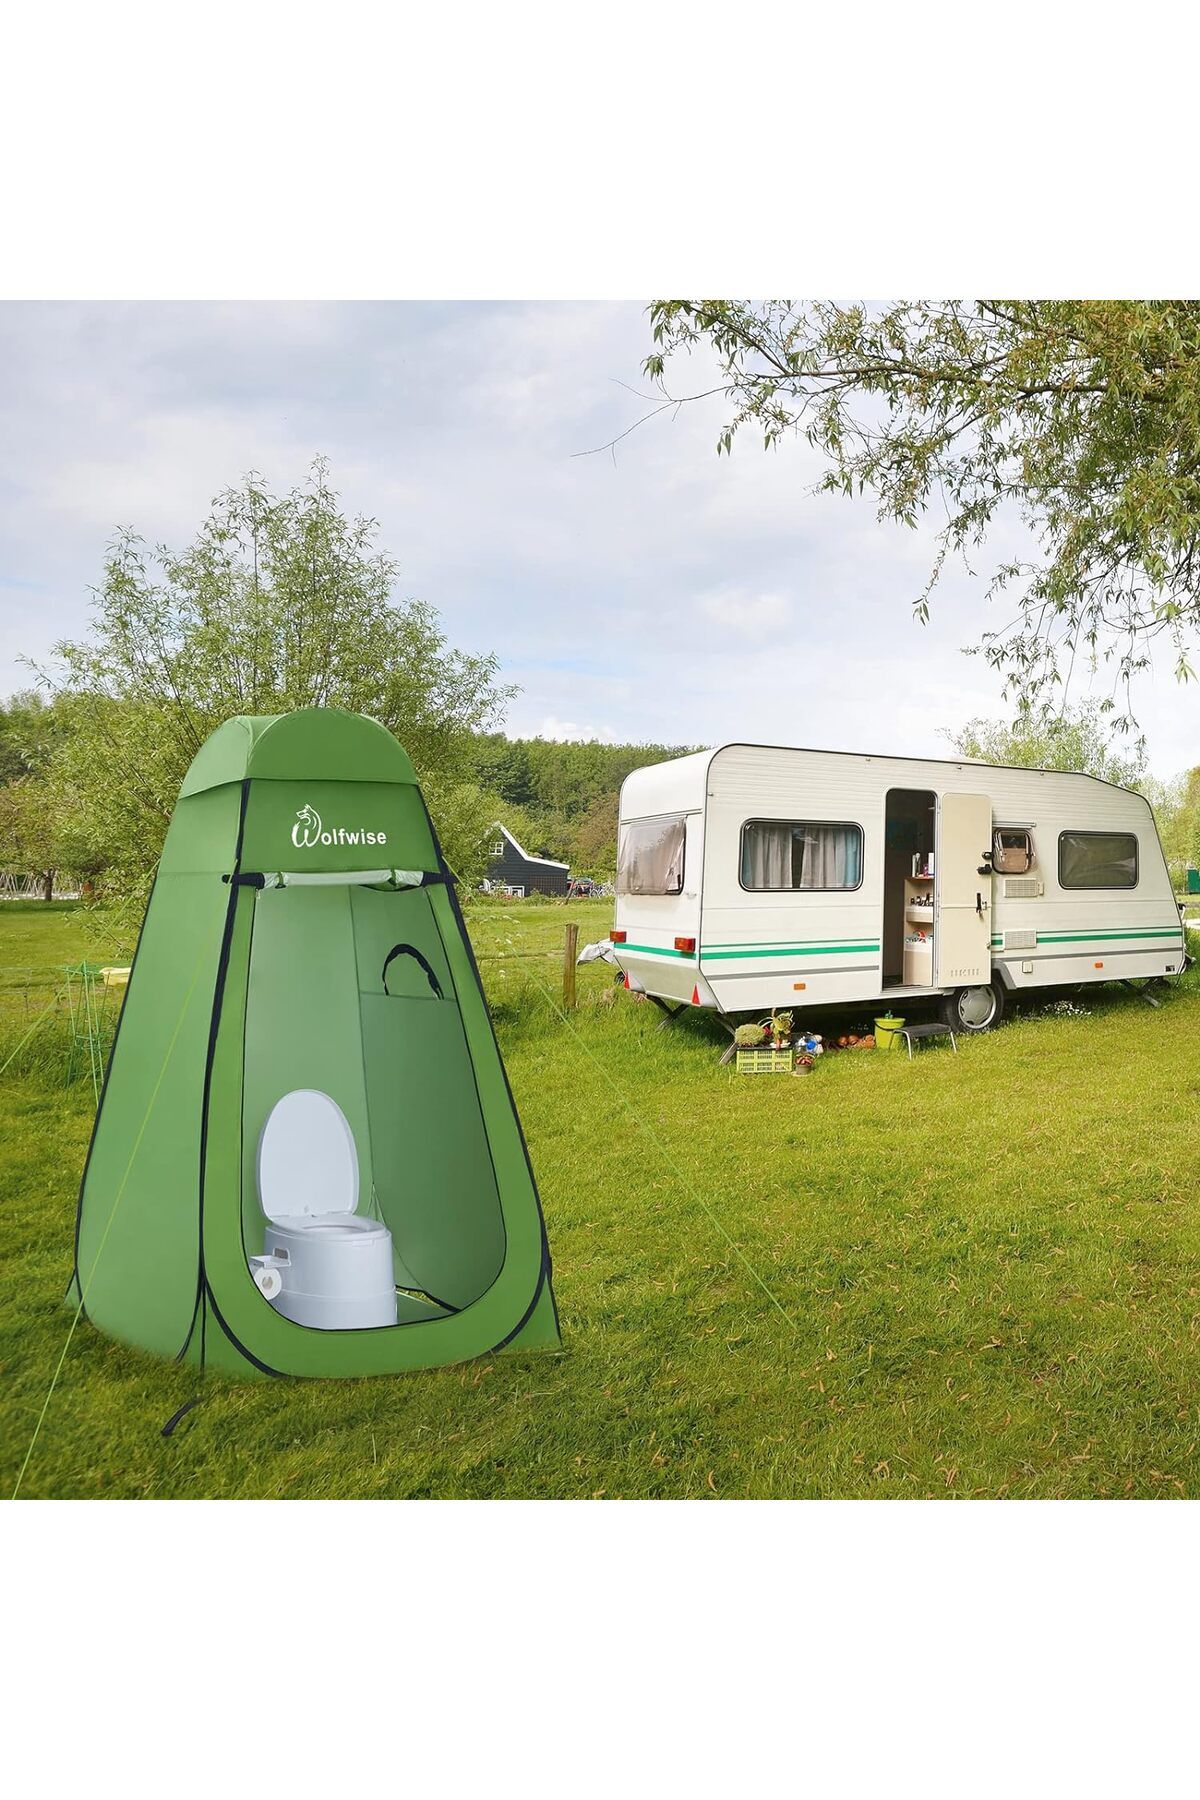 wolfwise Tuvalet ve Duş Gizlilik Çadırı - Kompakt ve Taşınabilir Kamp ve Doğa Yürüyüşü İçin